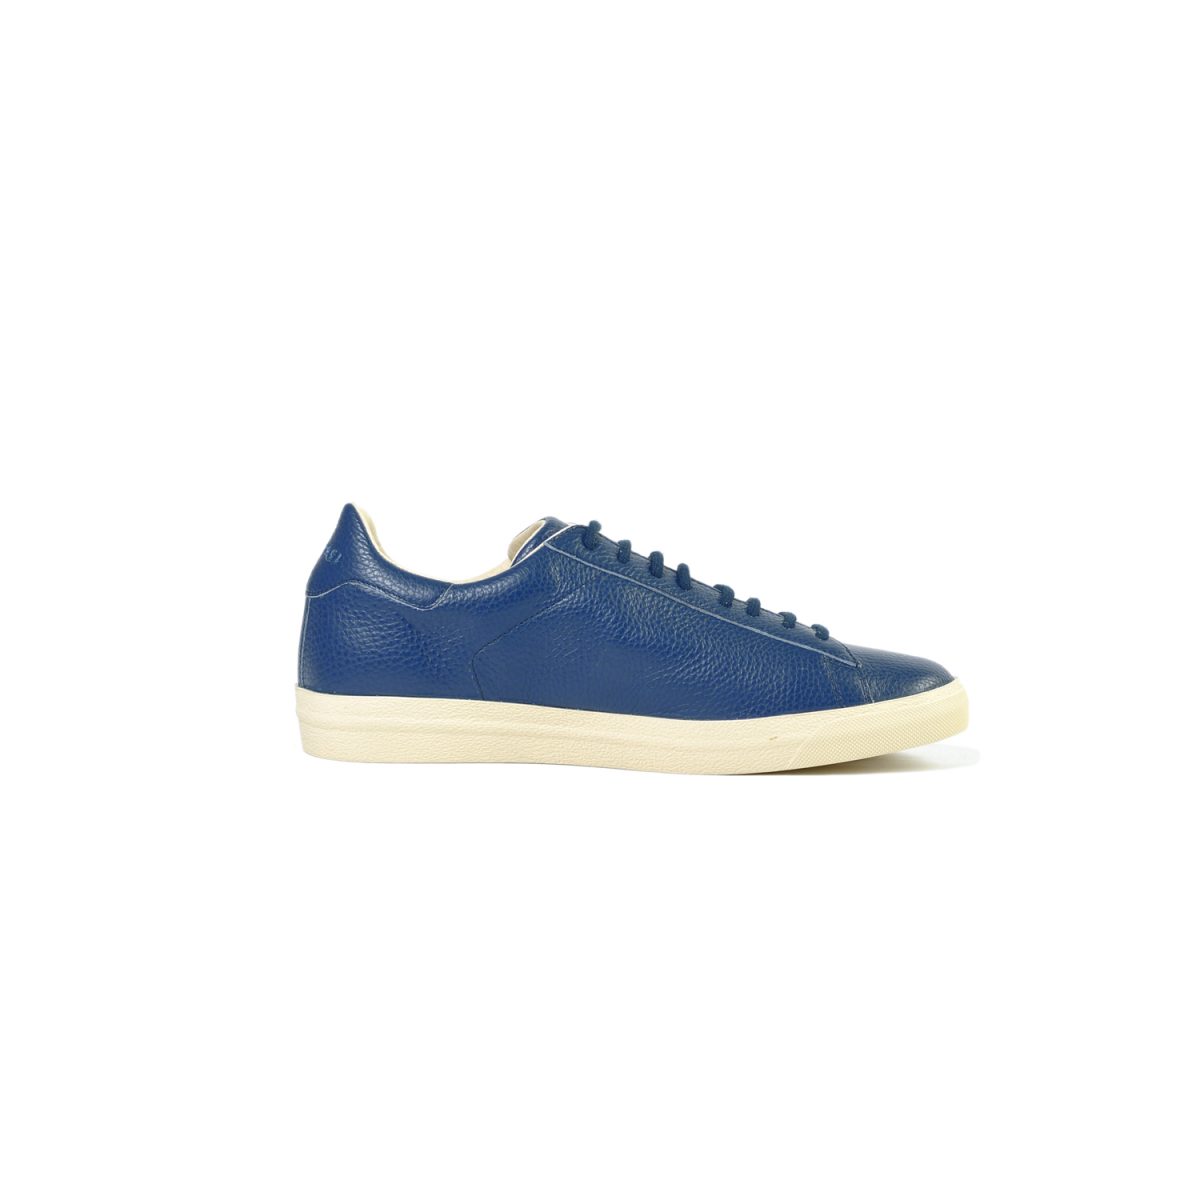 Tisza shoes - Simple - Blue